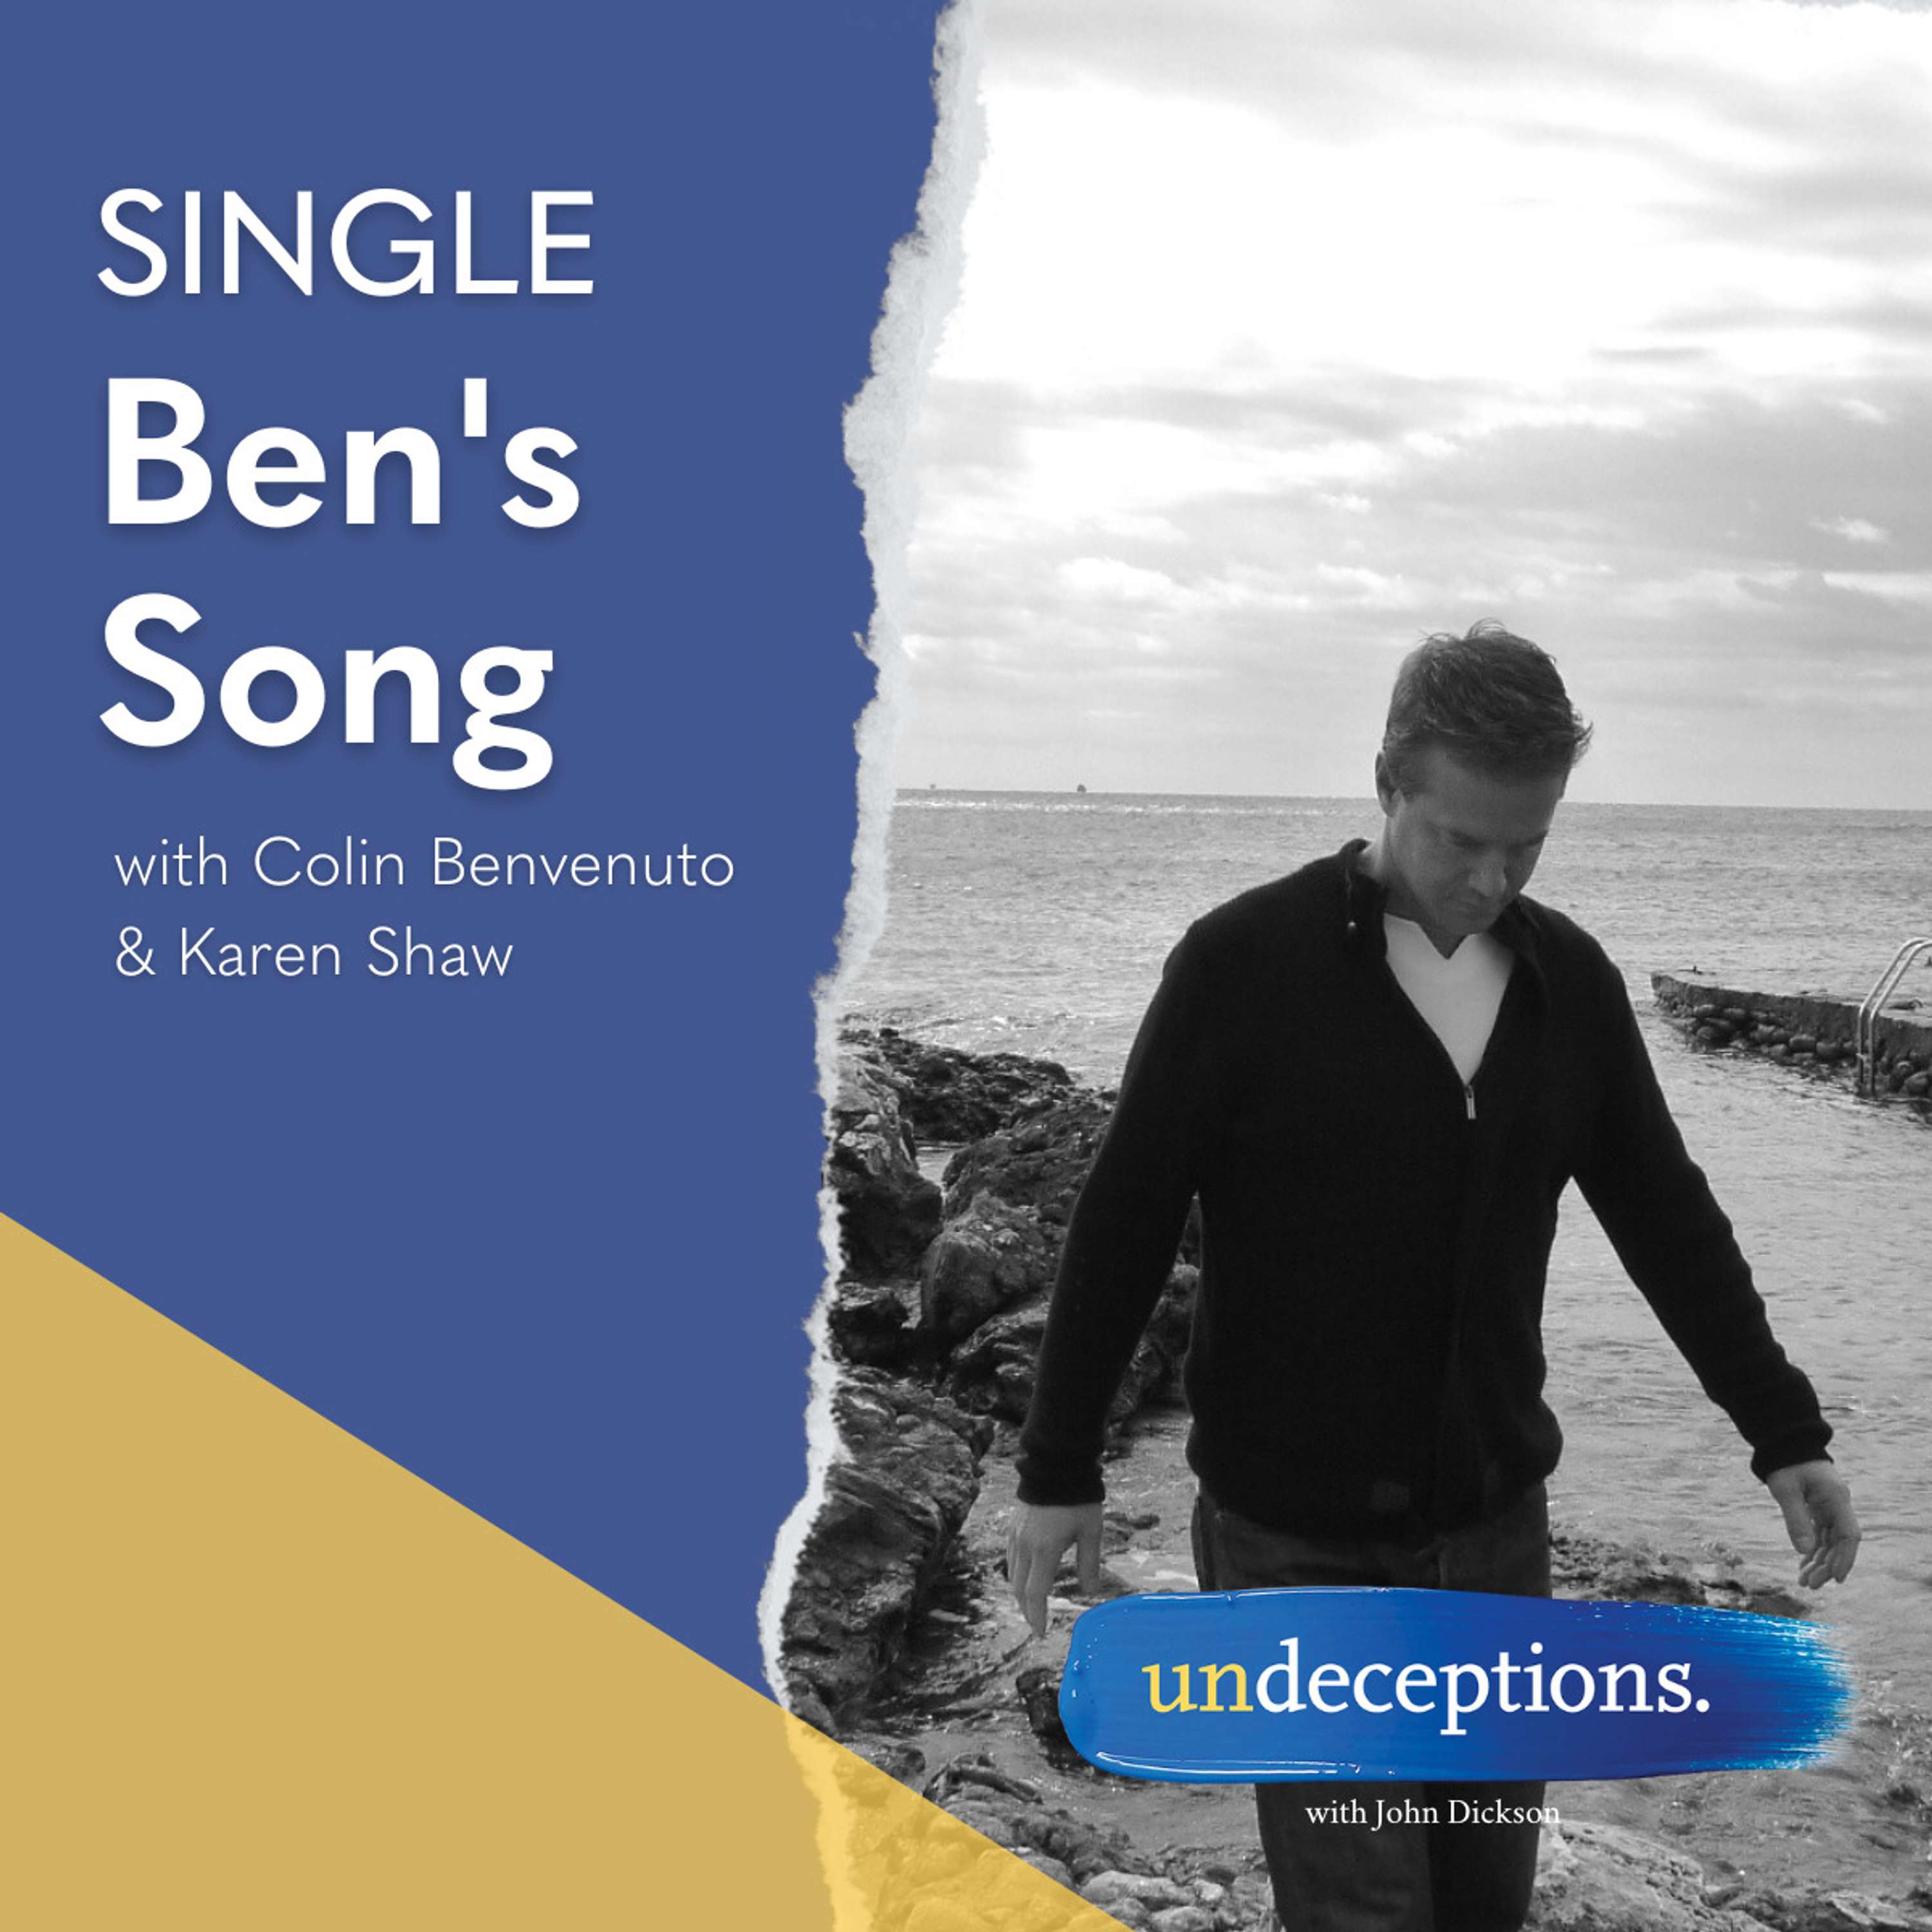 Ben's Song